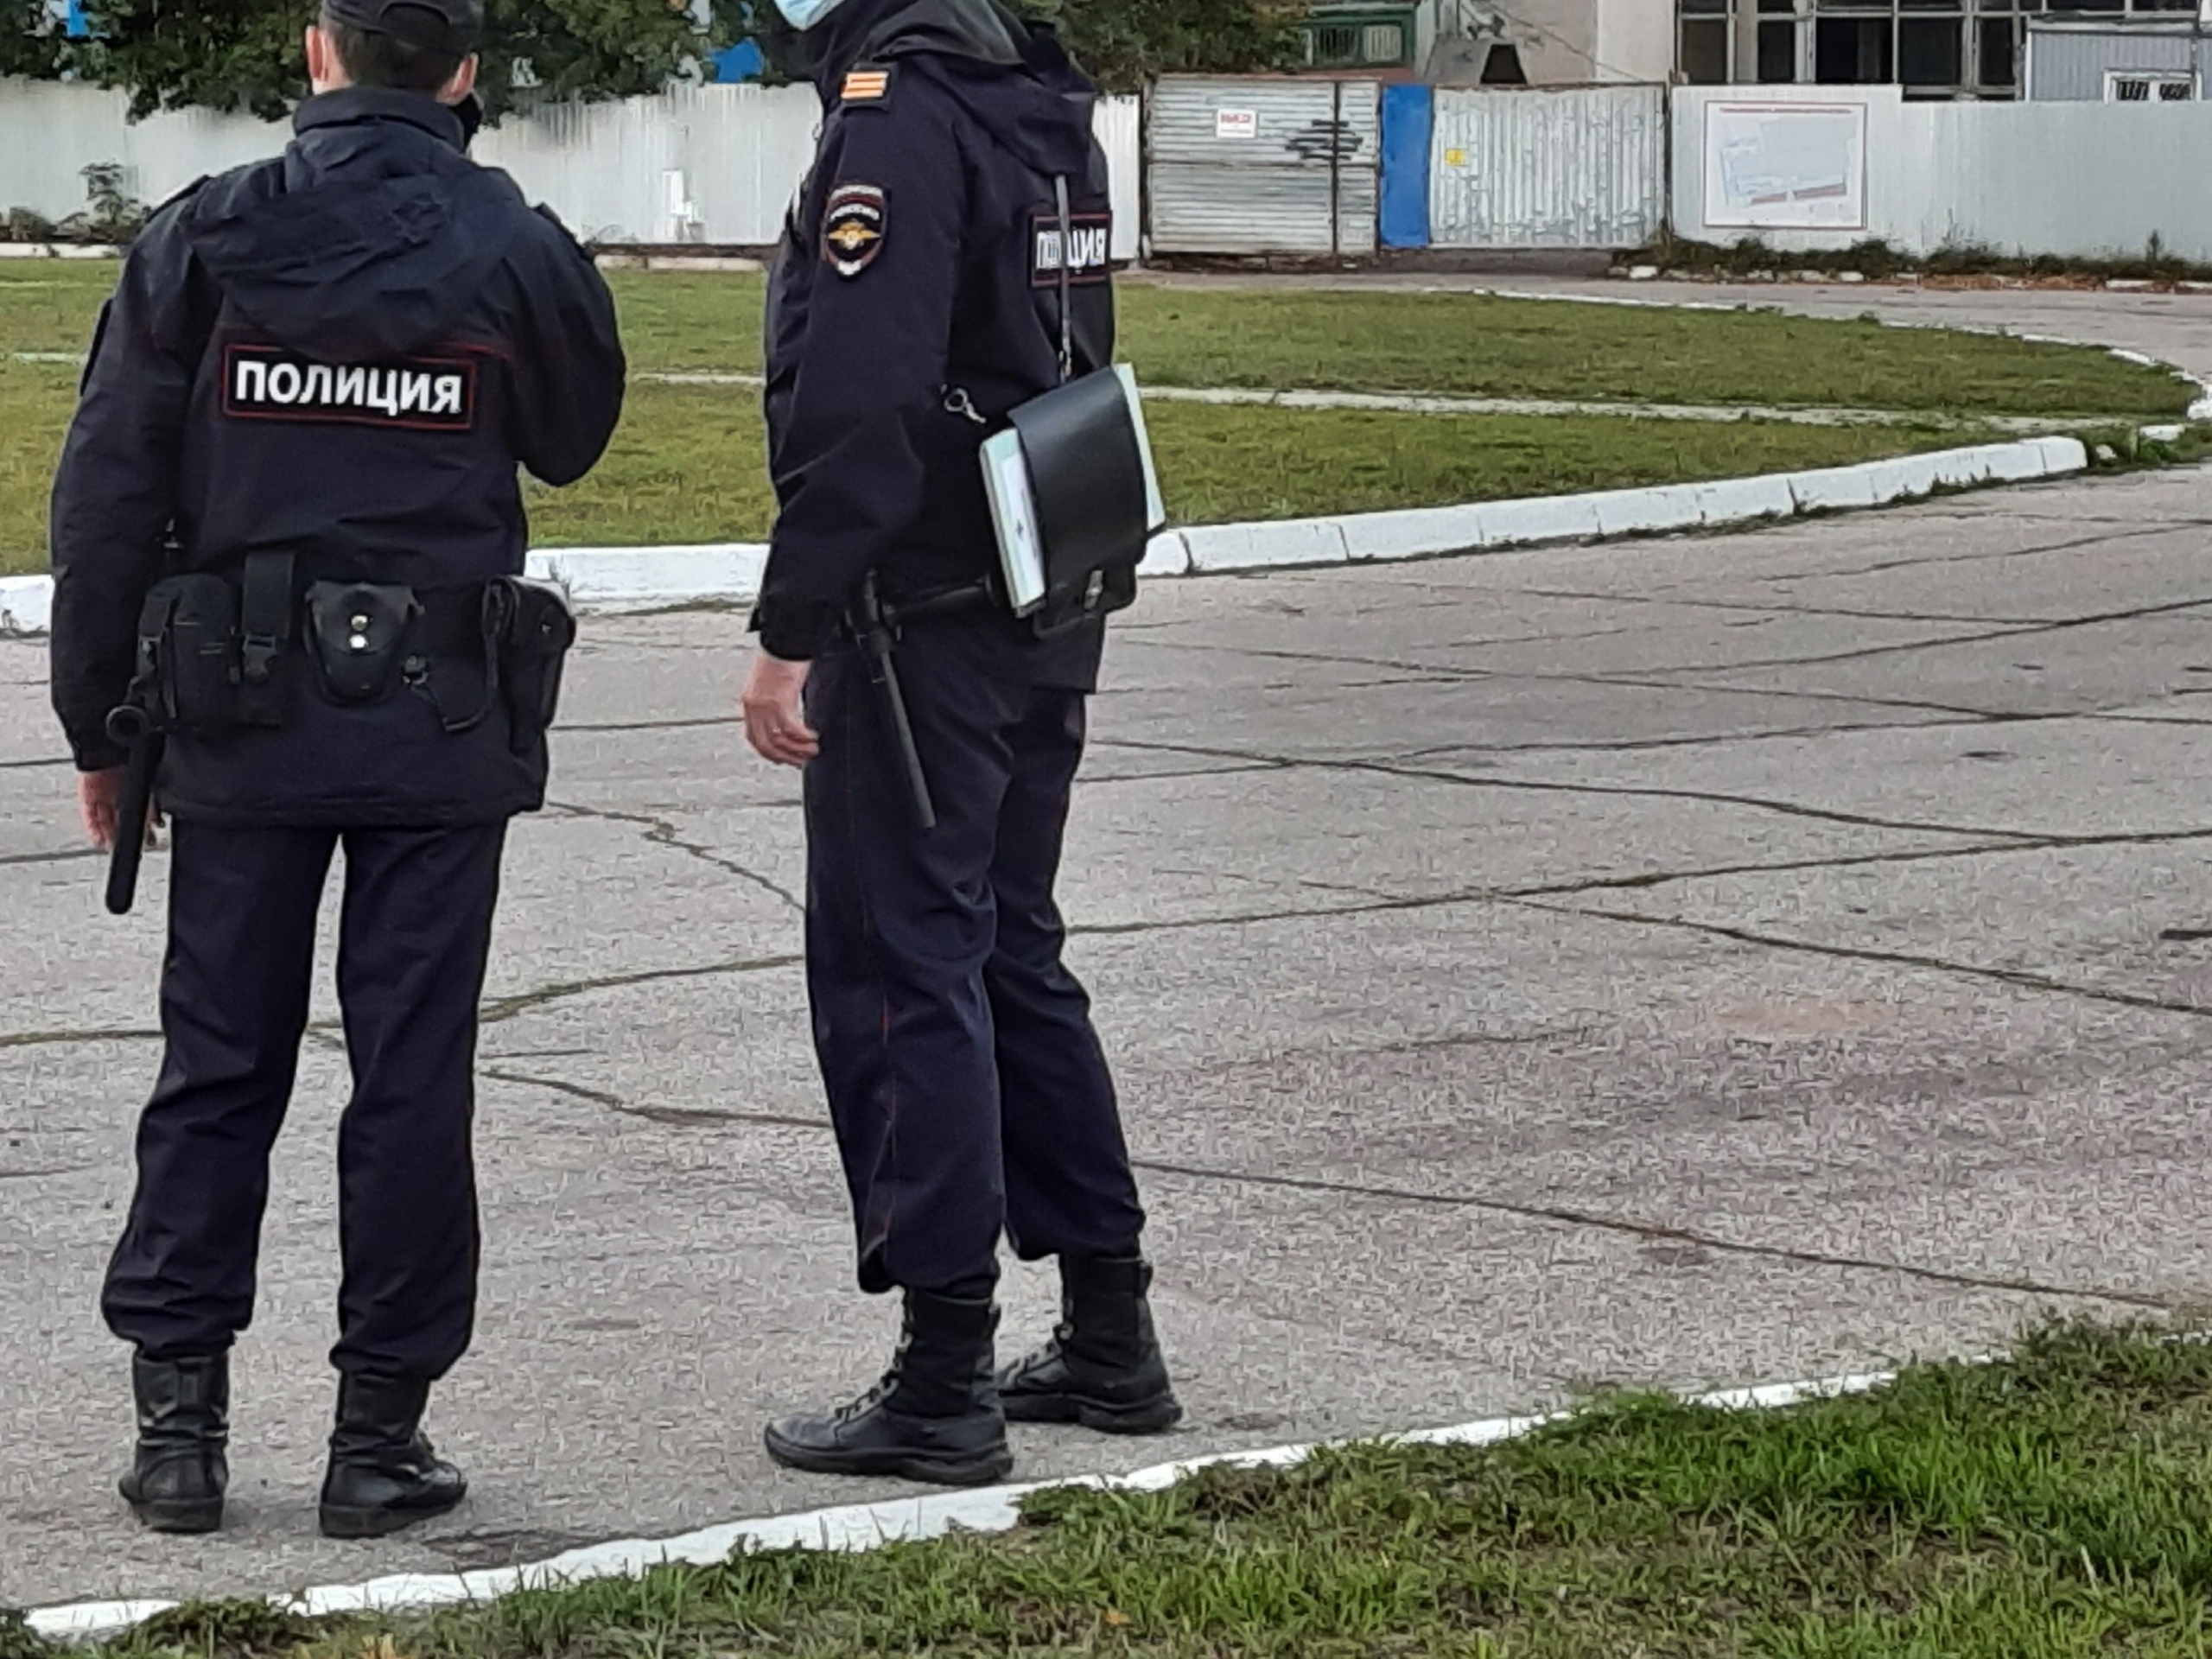 Полицейский из Нижнего Новгорода решил не разнимать смертельную драку и попал под суд